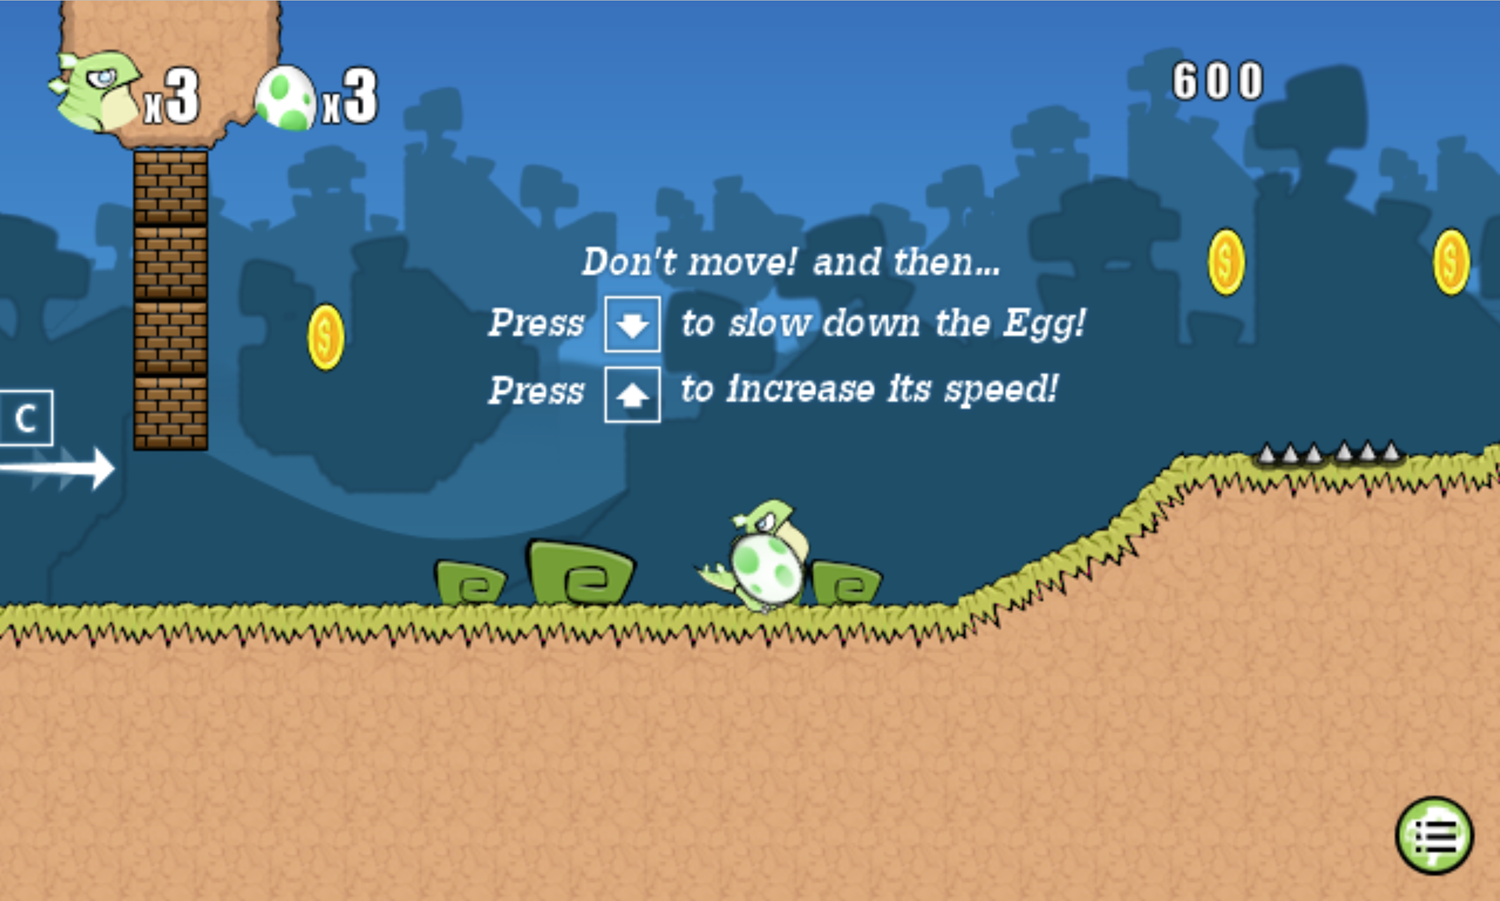 Bugongo Bouncy Jungle Game Change Egg Speed Instructions Screen Screenshot.